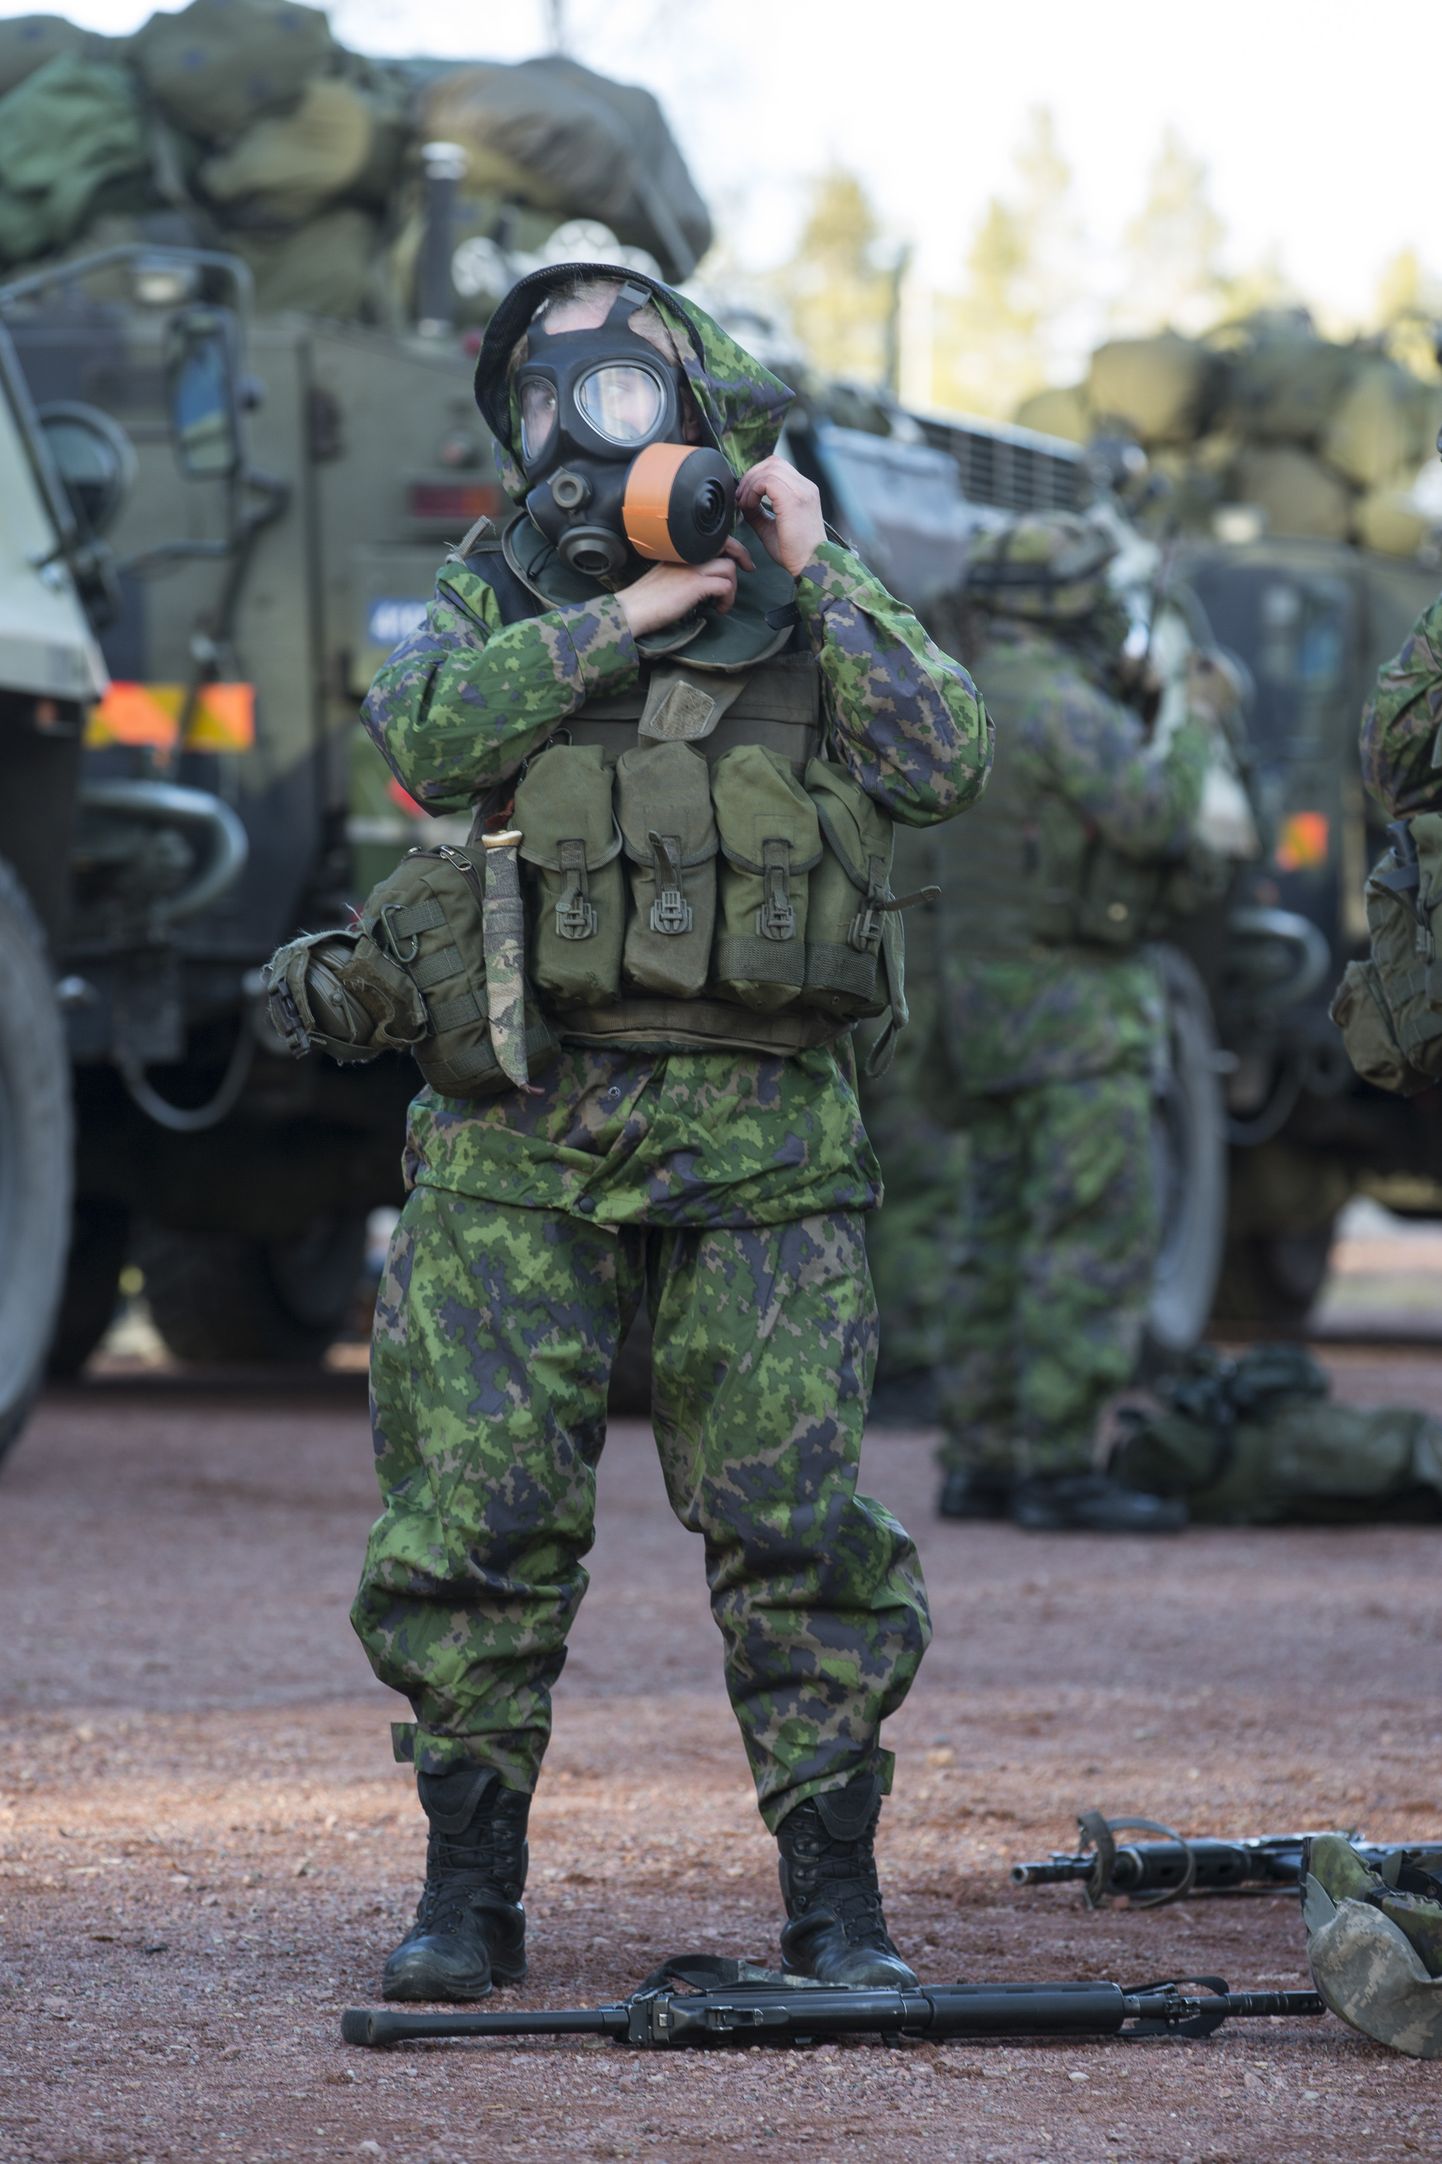 Soome kaitseväelane õppusel Trident Juncture.